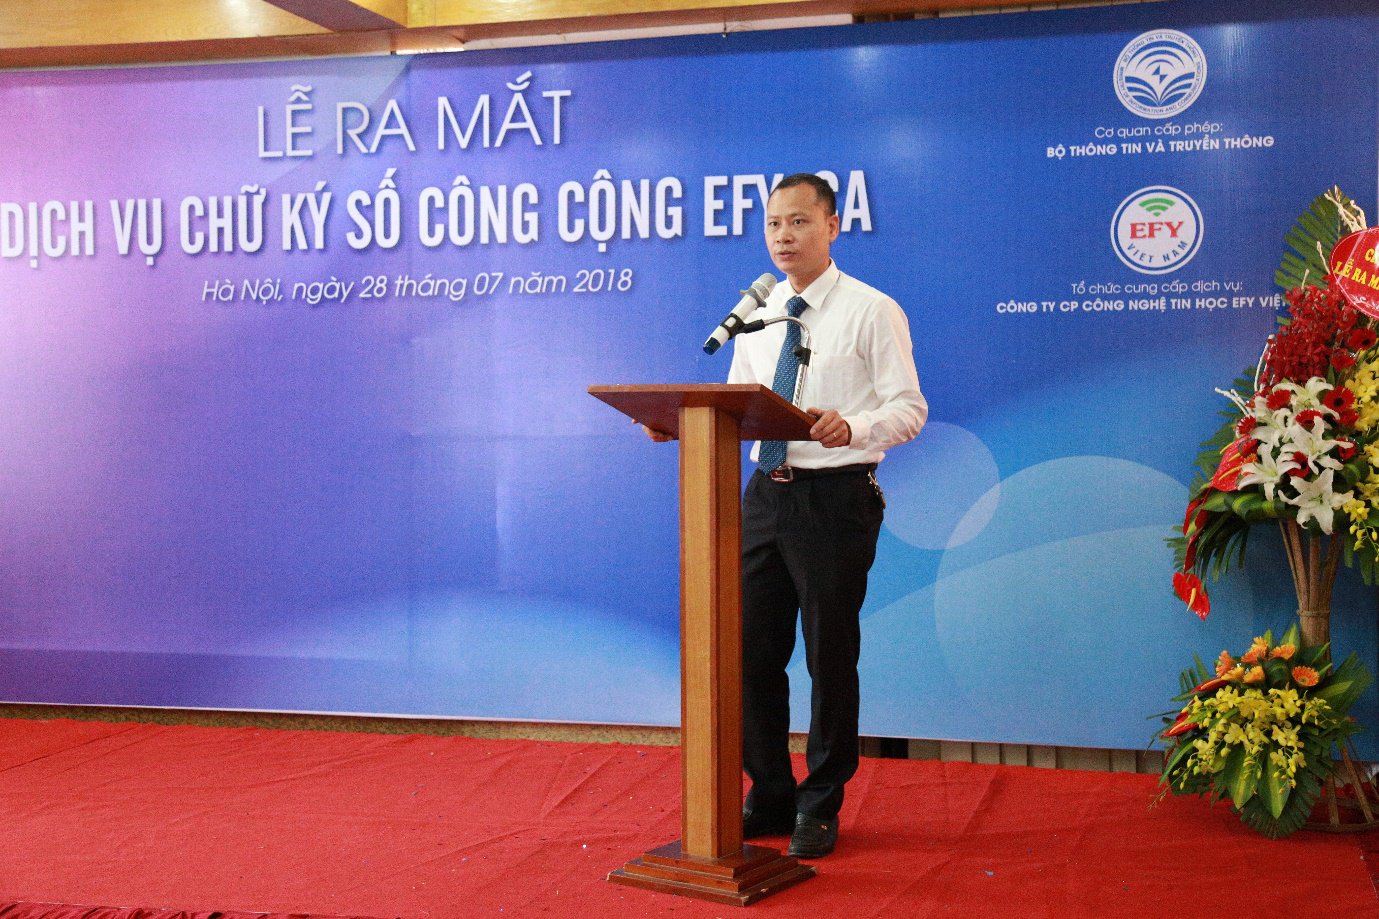 EFY Việt Nam chính thức ra mắt dịch vụ chữ ký số công cộng